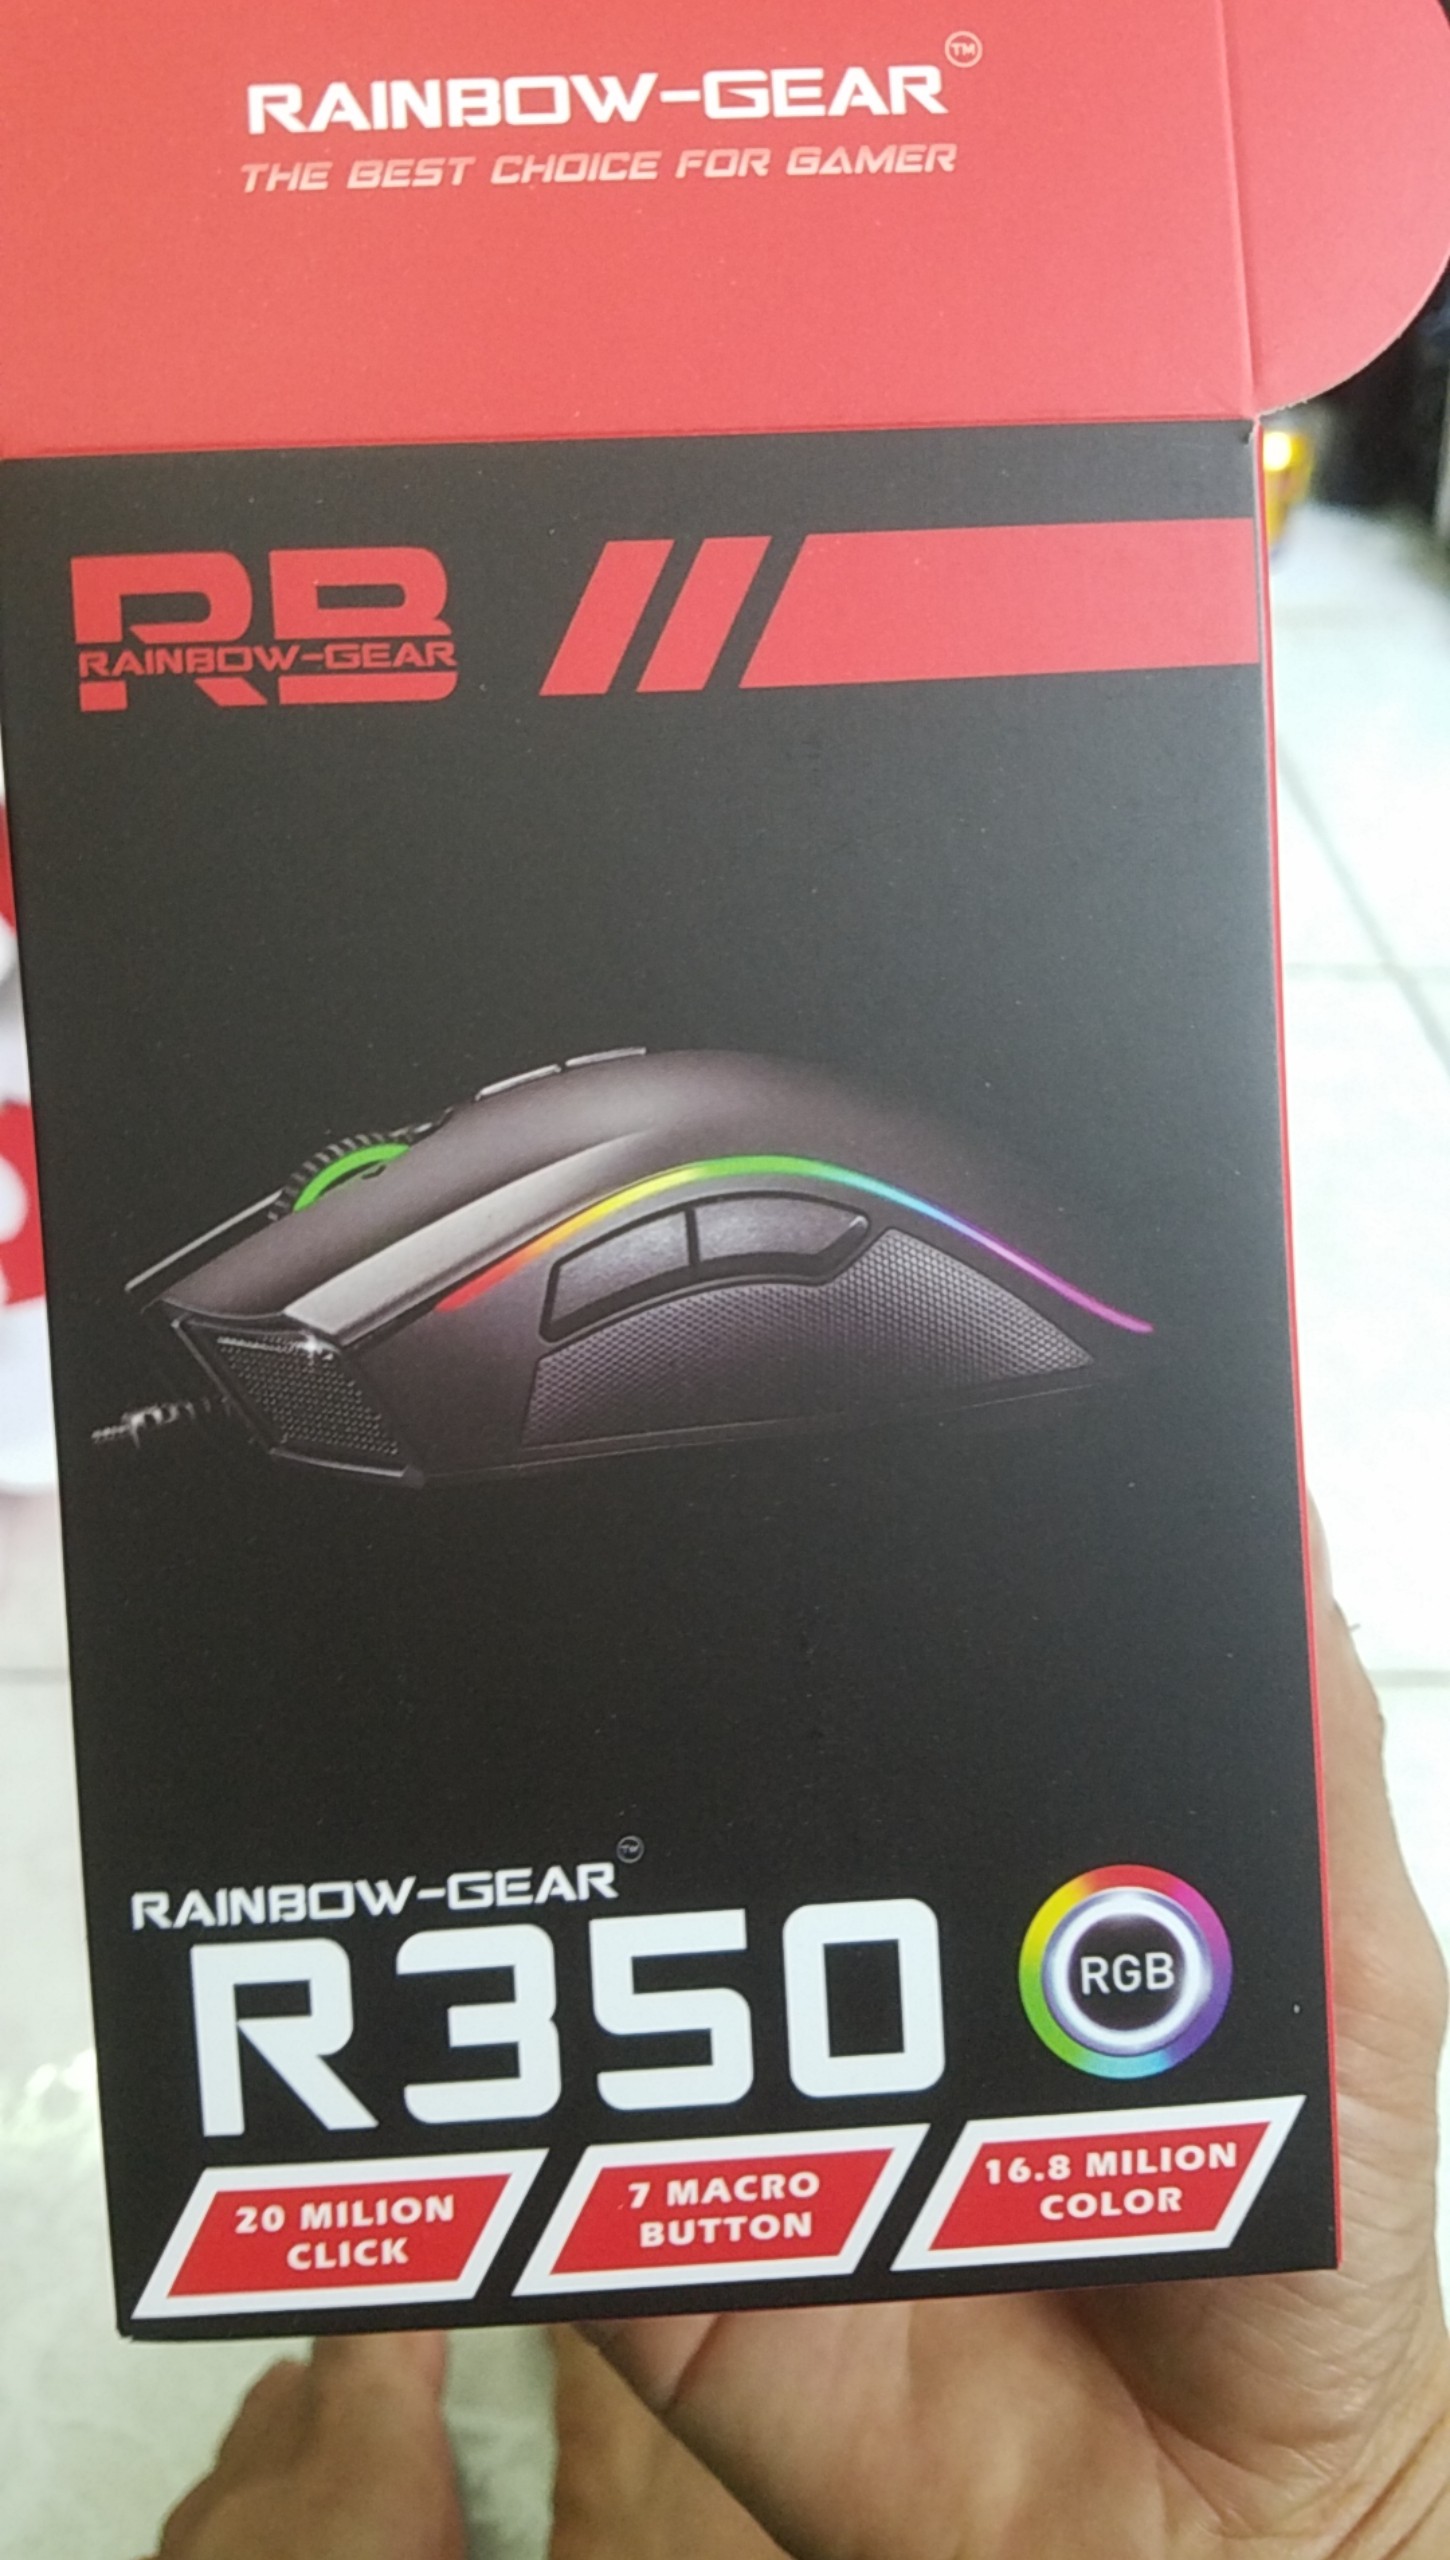 Mouse Gaming Rainbow R350 - Hàng Chính Hãng